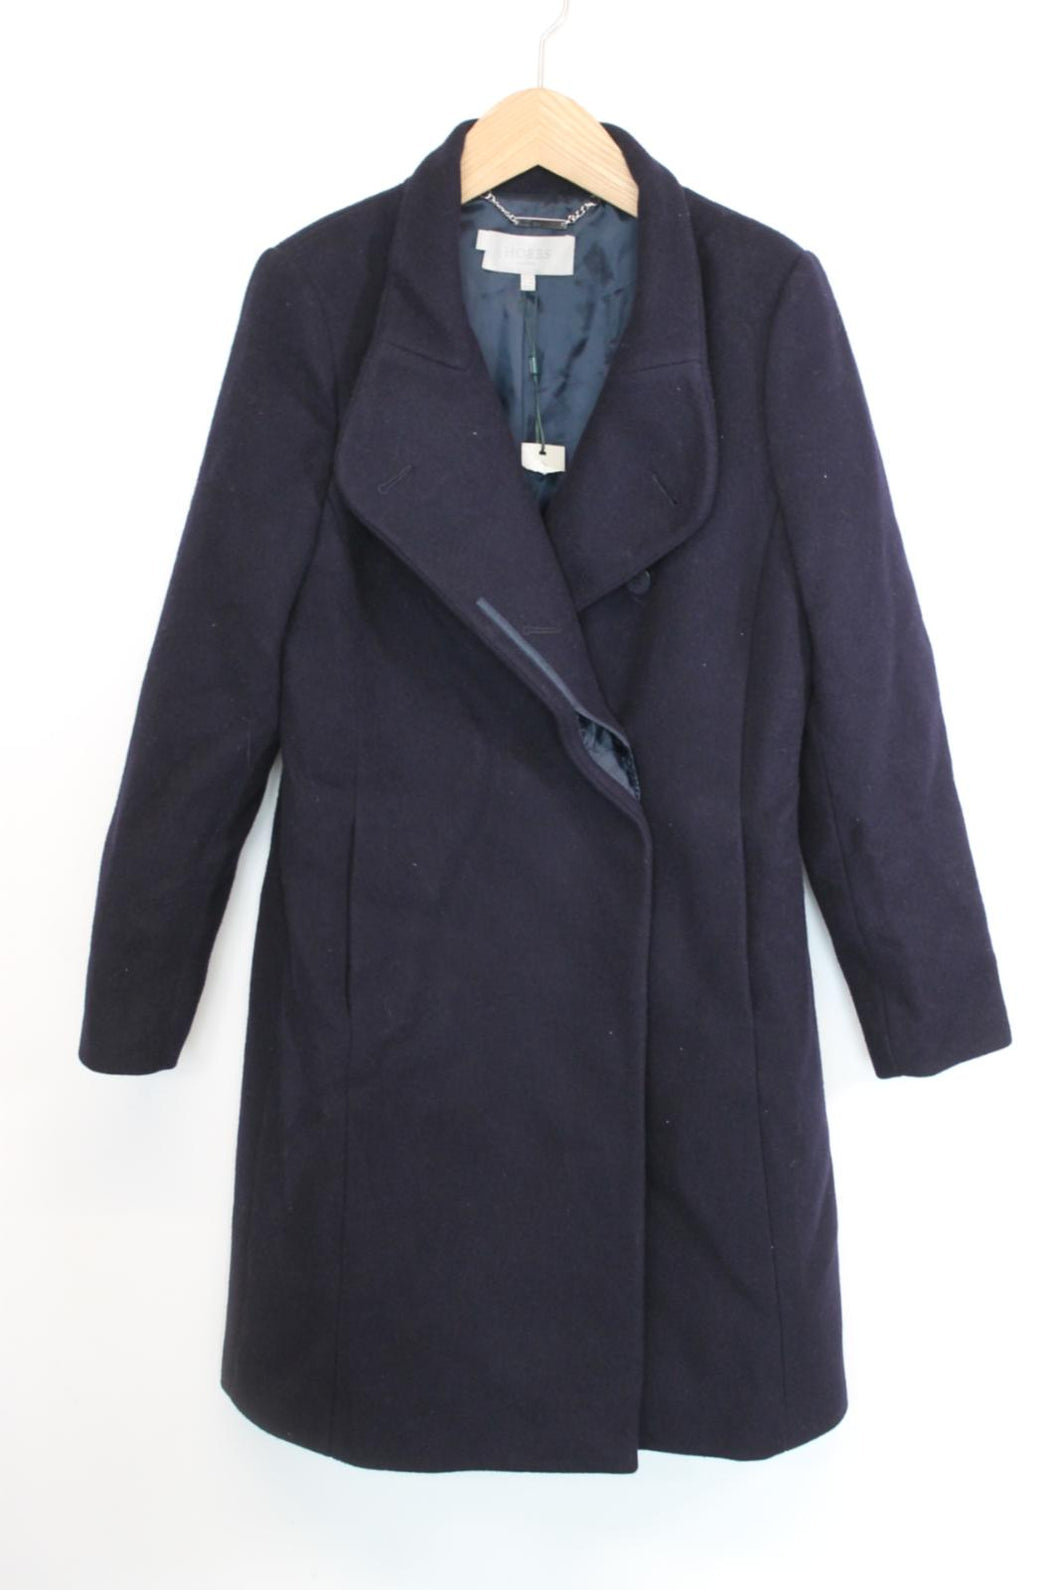 HOBBS Ladies Navy Blue Wool Invisible Button Overcoat Coat EU40 UK12 NEW